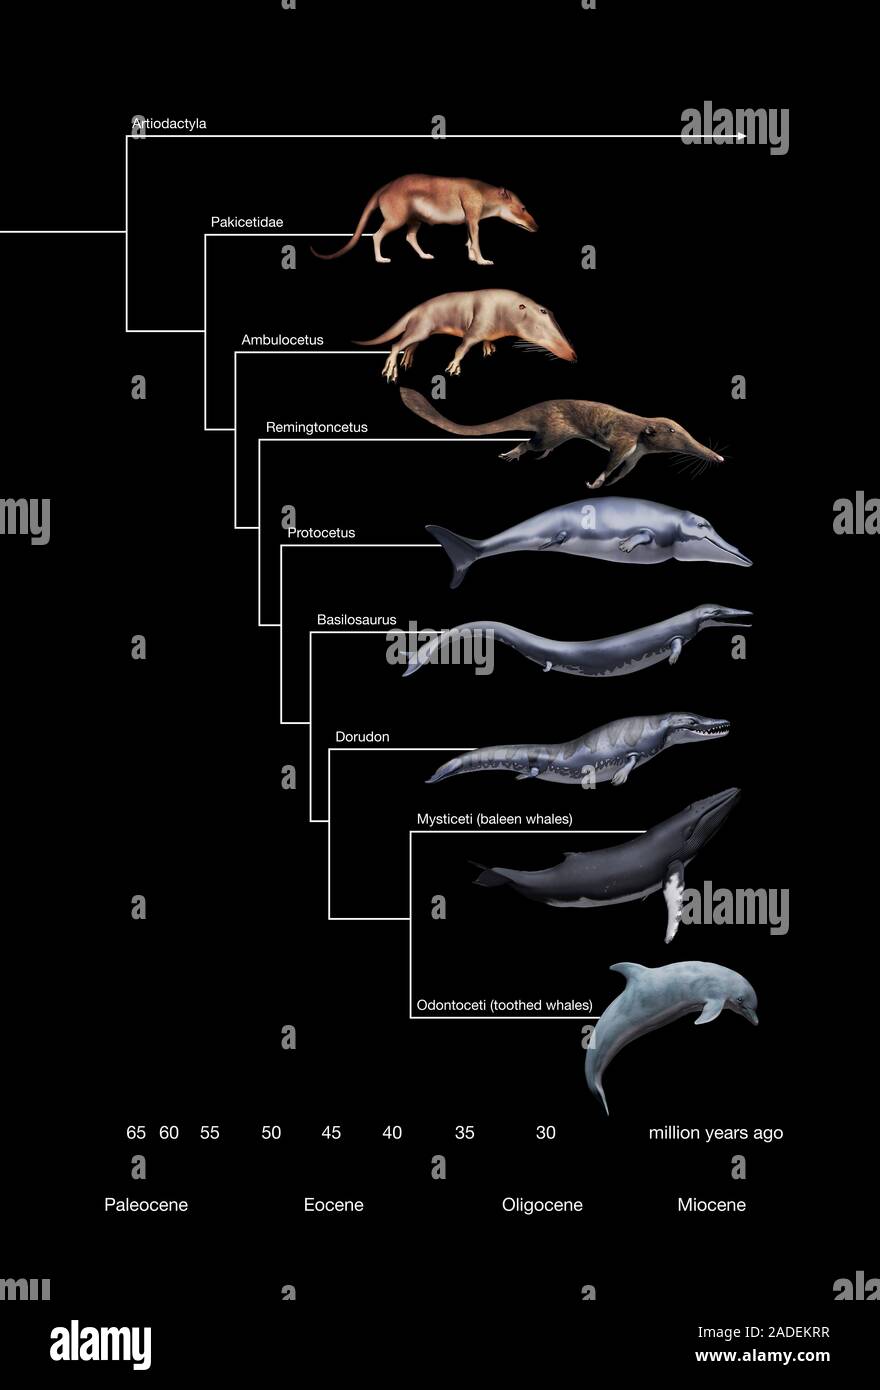 Whale Evolution. Abbildung: Sechs prähistorische Wal Vorfahren und zwei  modernen Wale (unten). Von oben nach unten, die prähistorische Gattungen  sind: Pakic Stockfotografie - Alamy